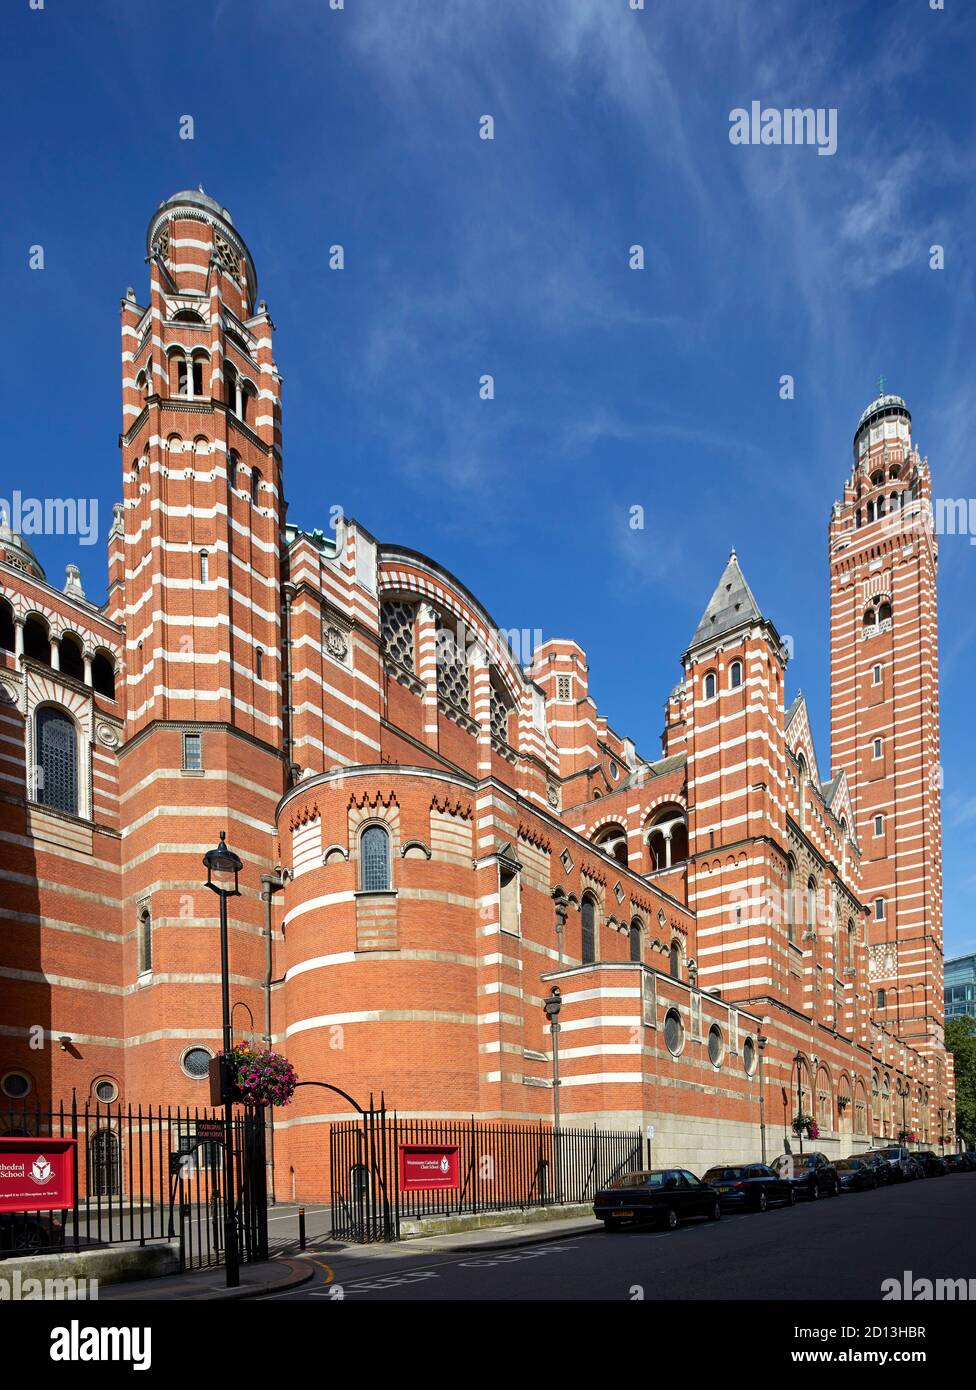 Cathédrale de Westminster (1903) John Francis Bentley. Paysage urbain, rues et façades de Londres, Londres, Royaume-Uni. Architecte : divers, 2020. Banque D'Images